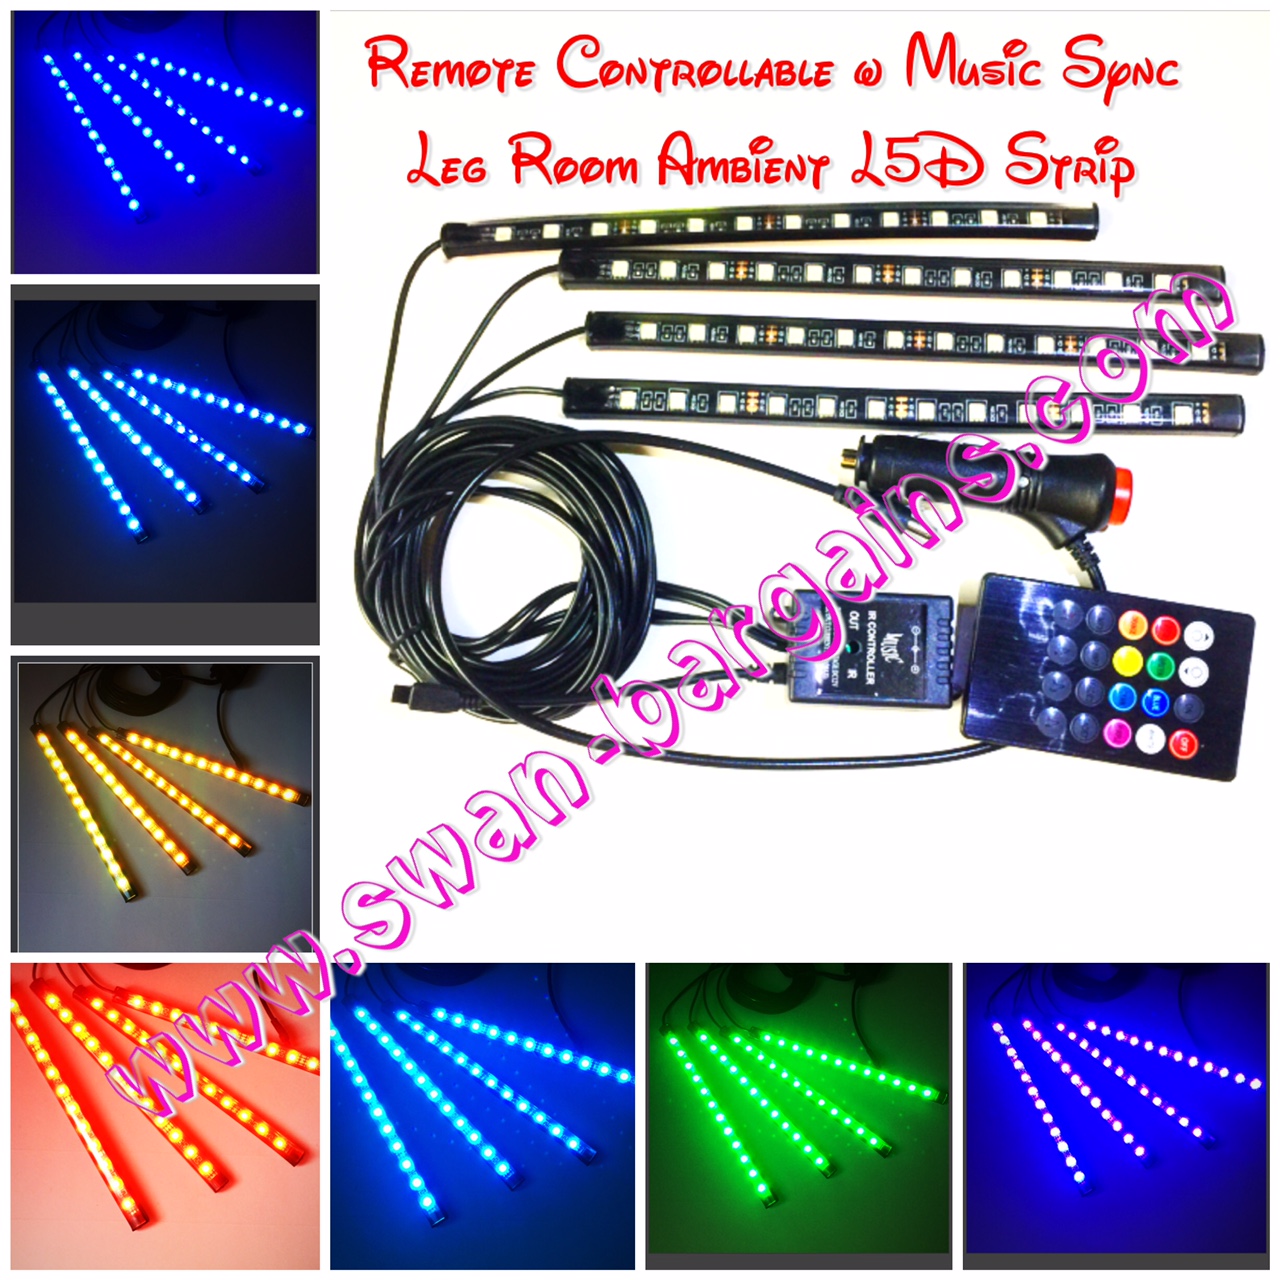 Music Sync RC Legroom Ambient LED Strip